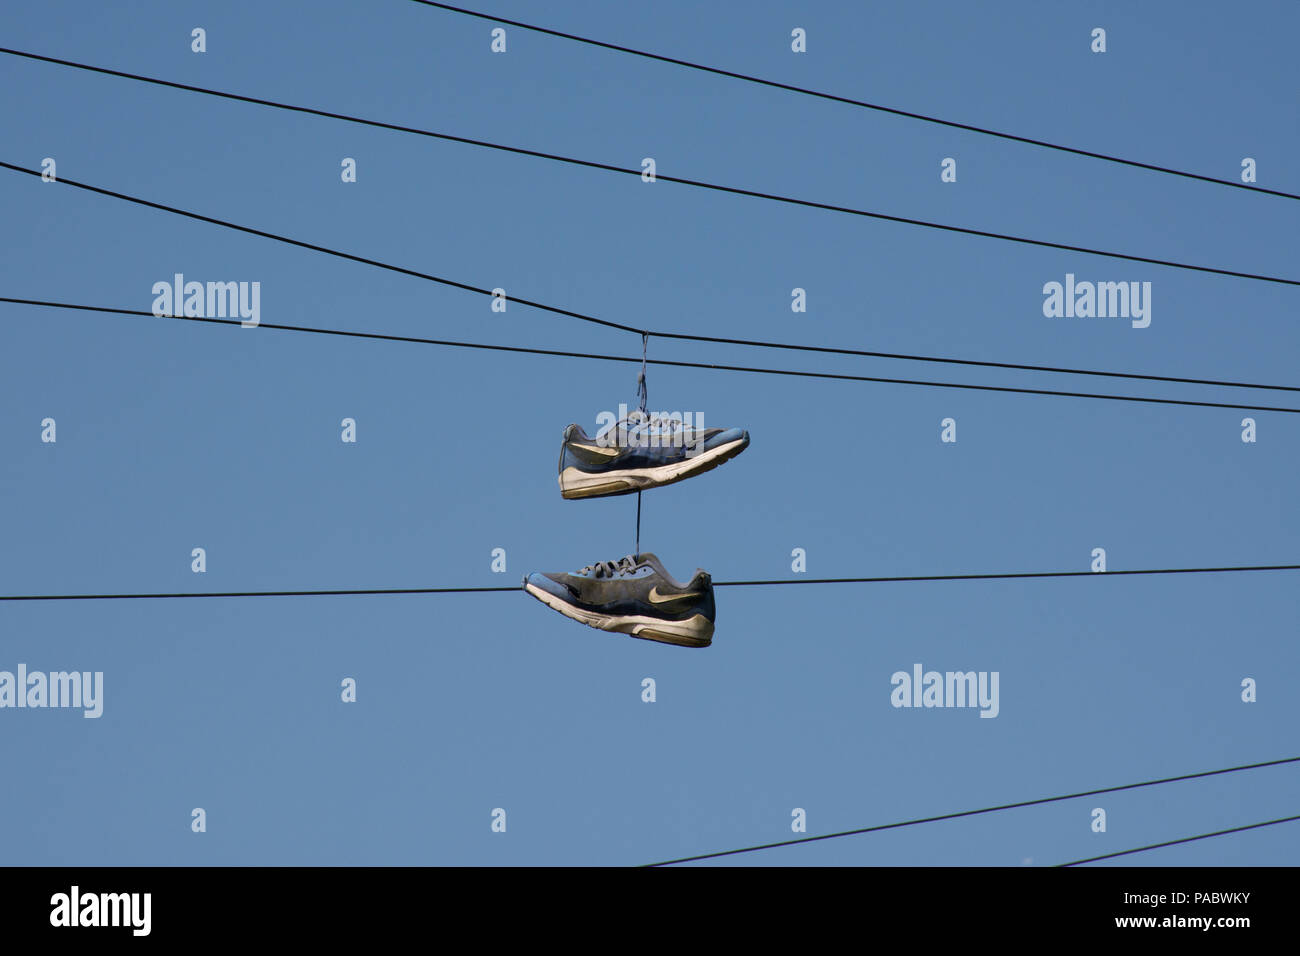 Par de instructores azul o zapatillas colgando de cables telegráficos contra un cielo azul Foto de stock